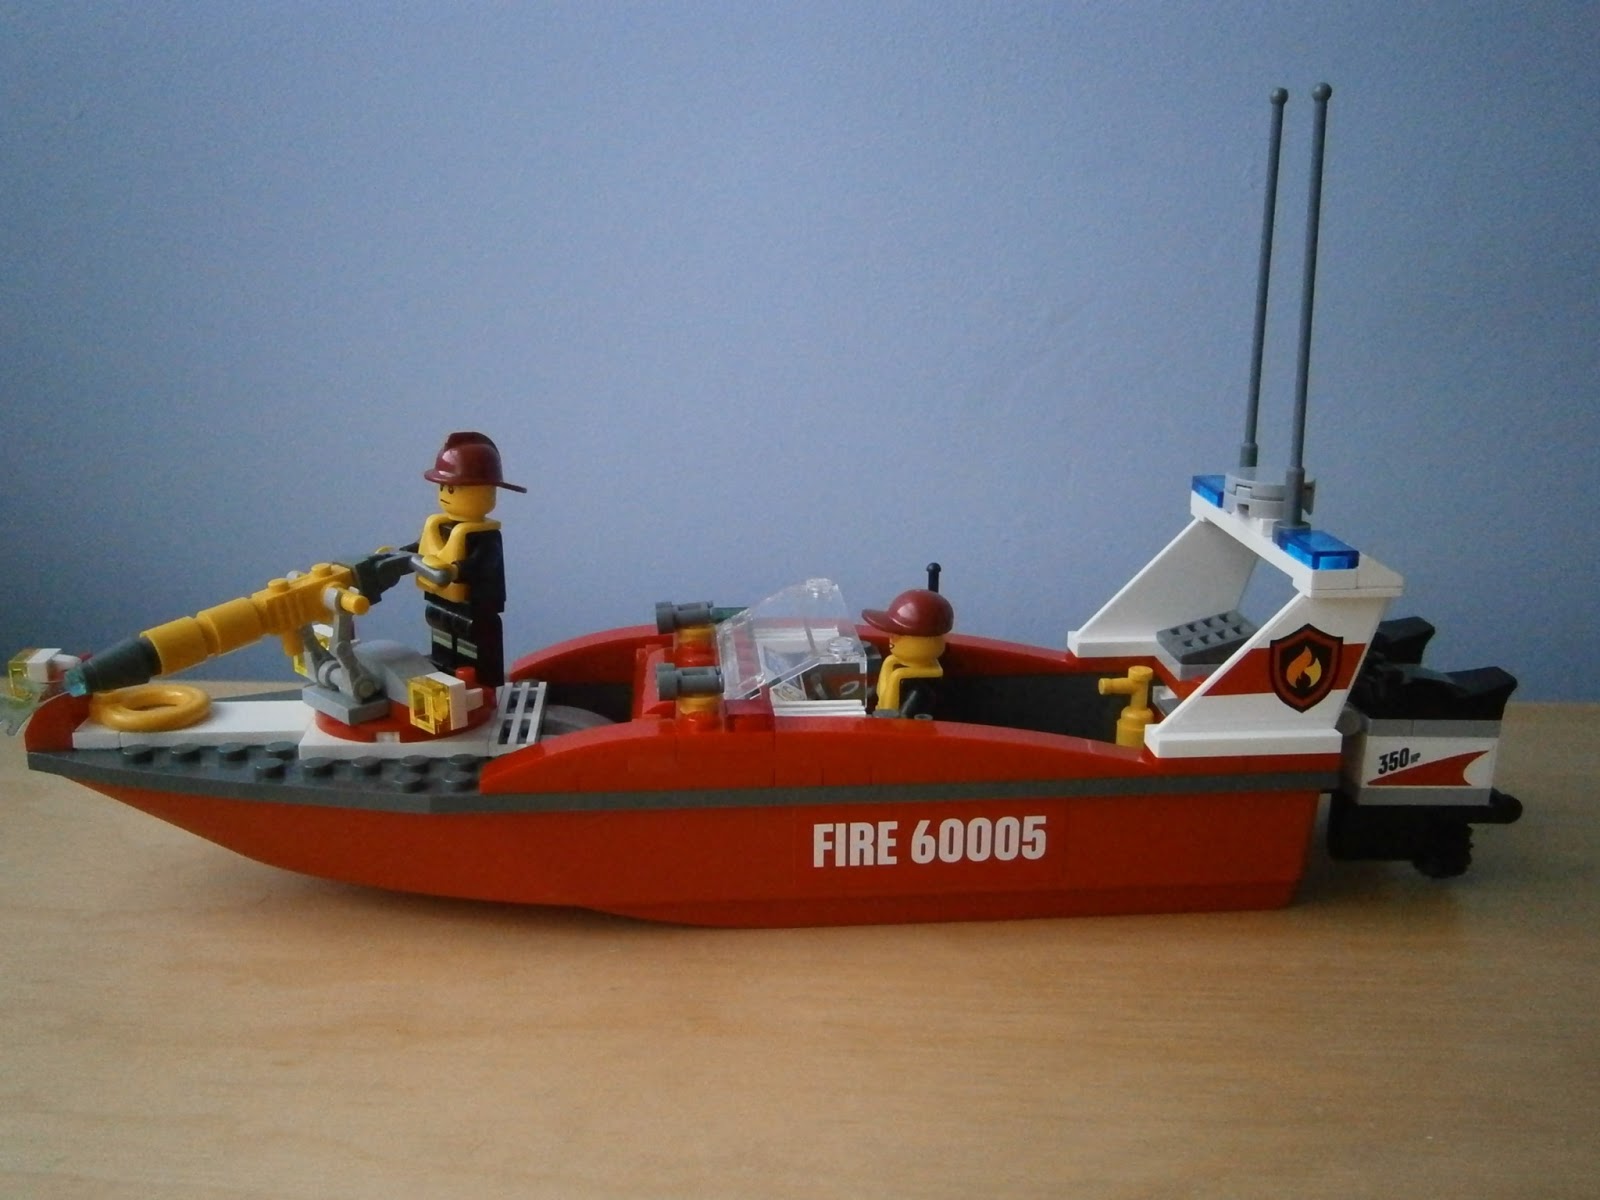 Adventure into Lego: 60005 Fire Boat mini review